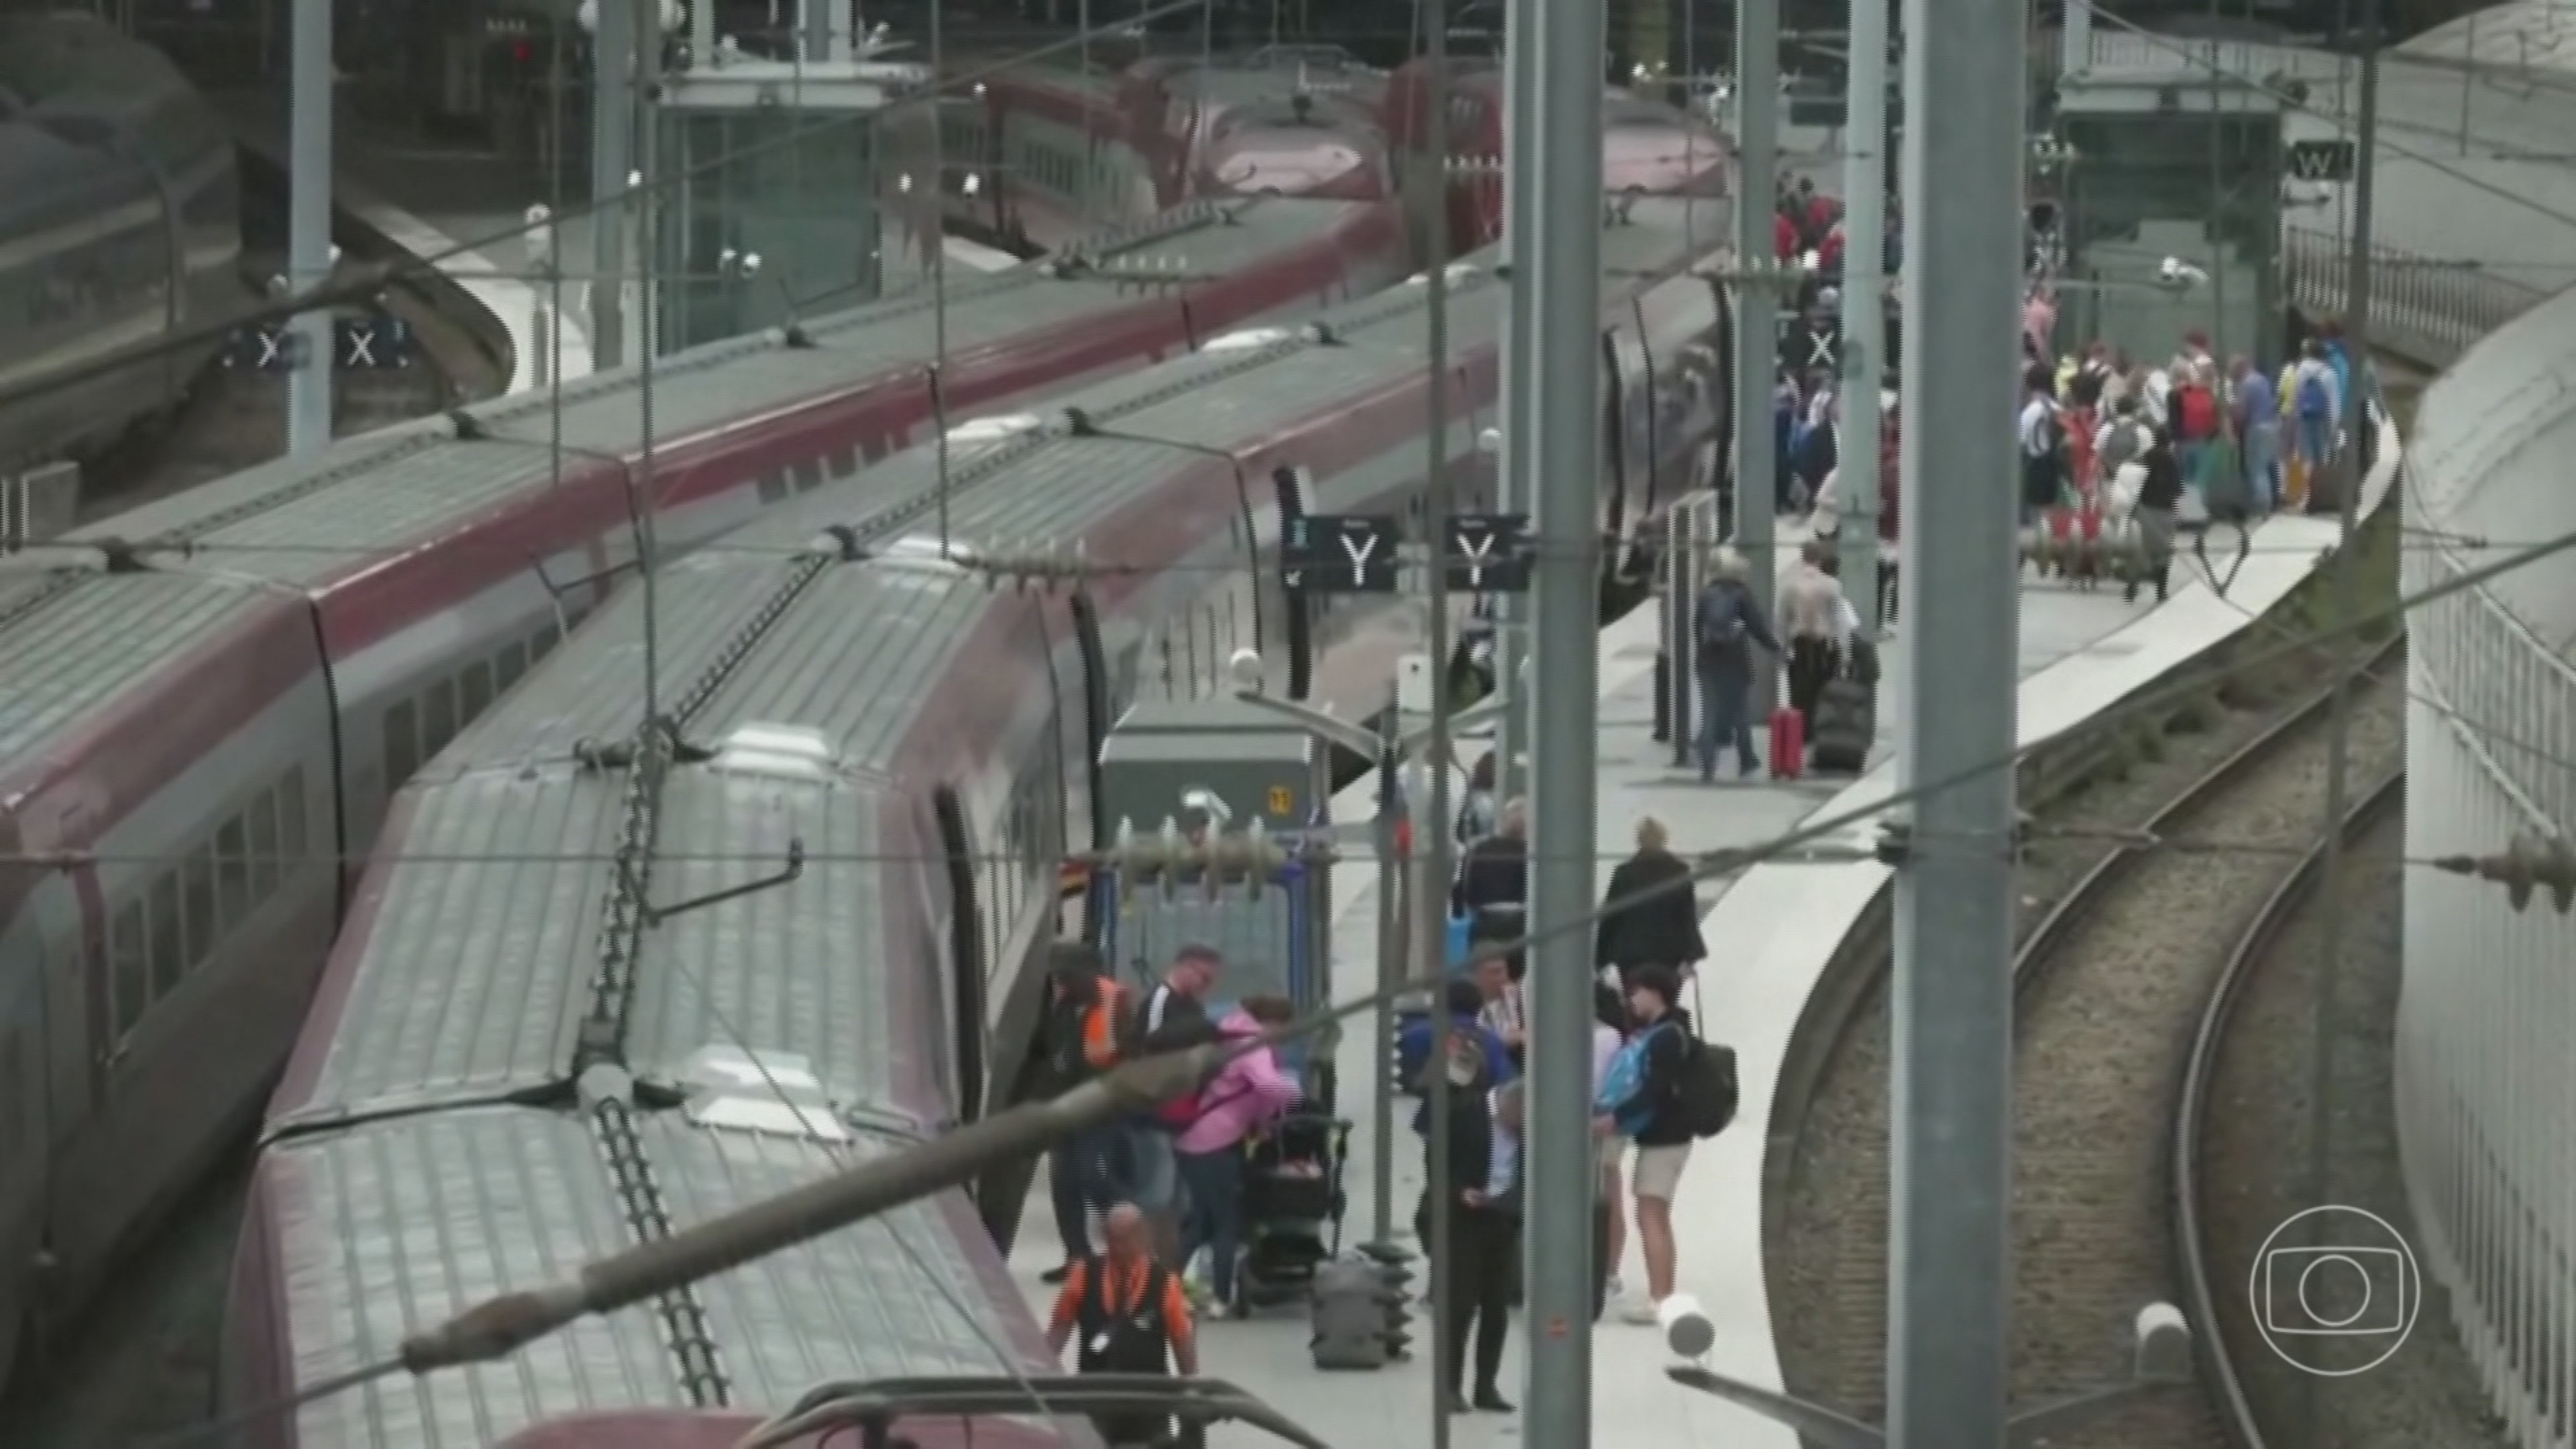 Ataque coordenado ao sistema ferroviário paralisa 3 linhas de trem em Paris